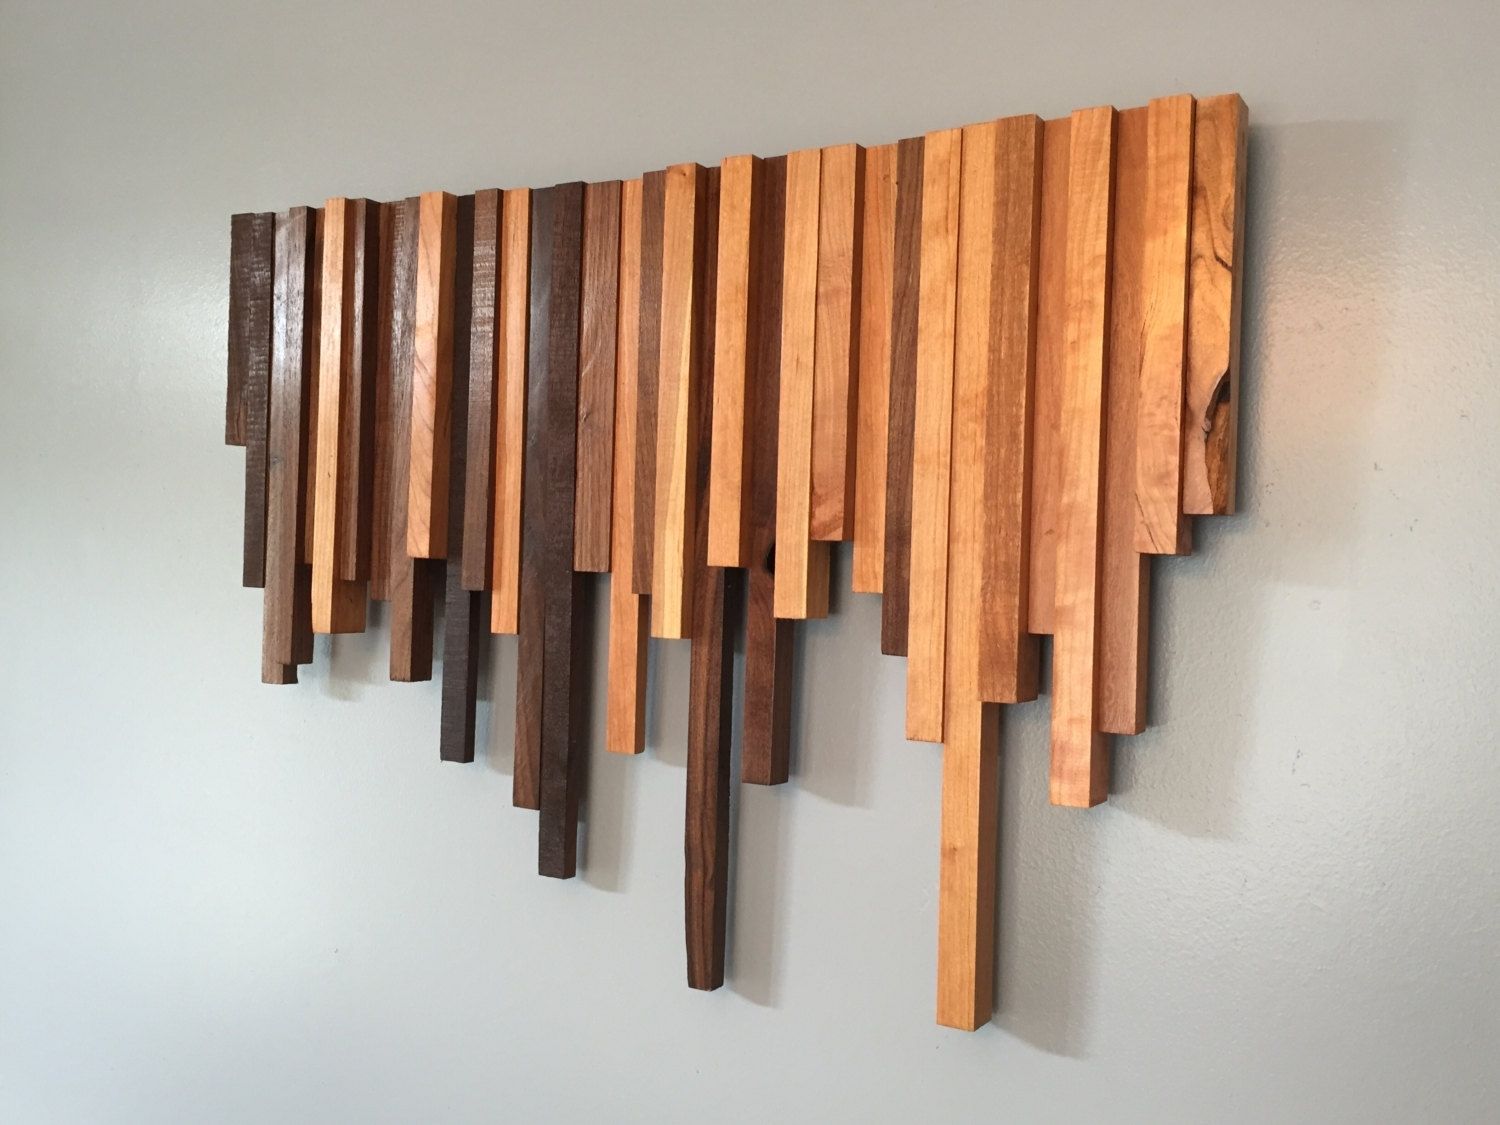 Stylish Wood Wall Art Decor | Jeffsbakery Basement & Mattress With Wood Wall Art (Photo 4 of 20)